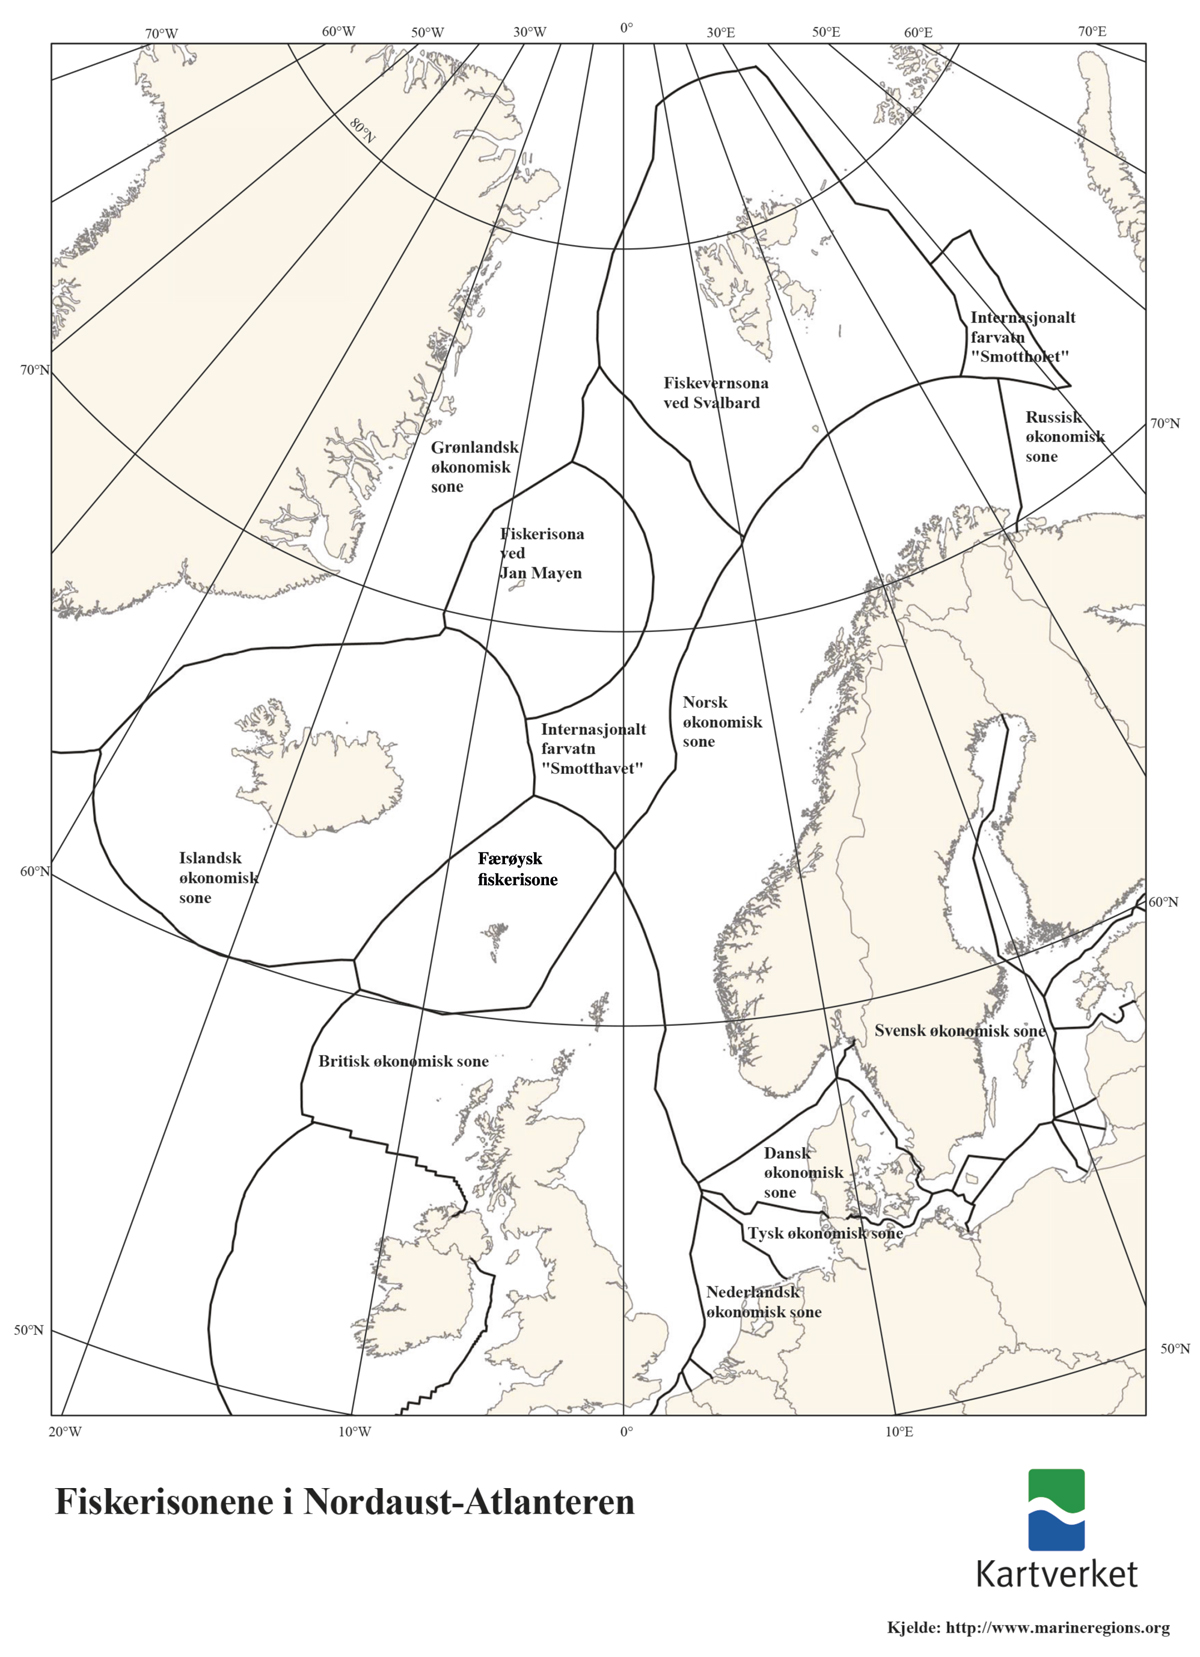 Figur 2.1 Kart som viser dei ulike fiskerisonene i Nordaust-Atlanteren.